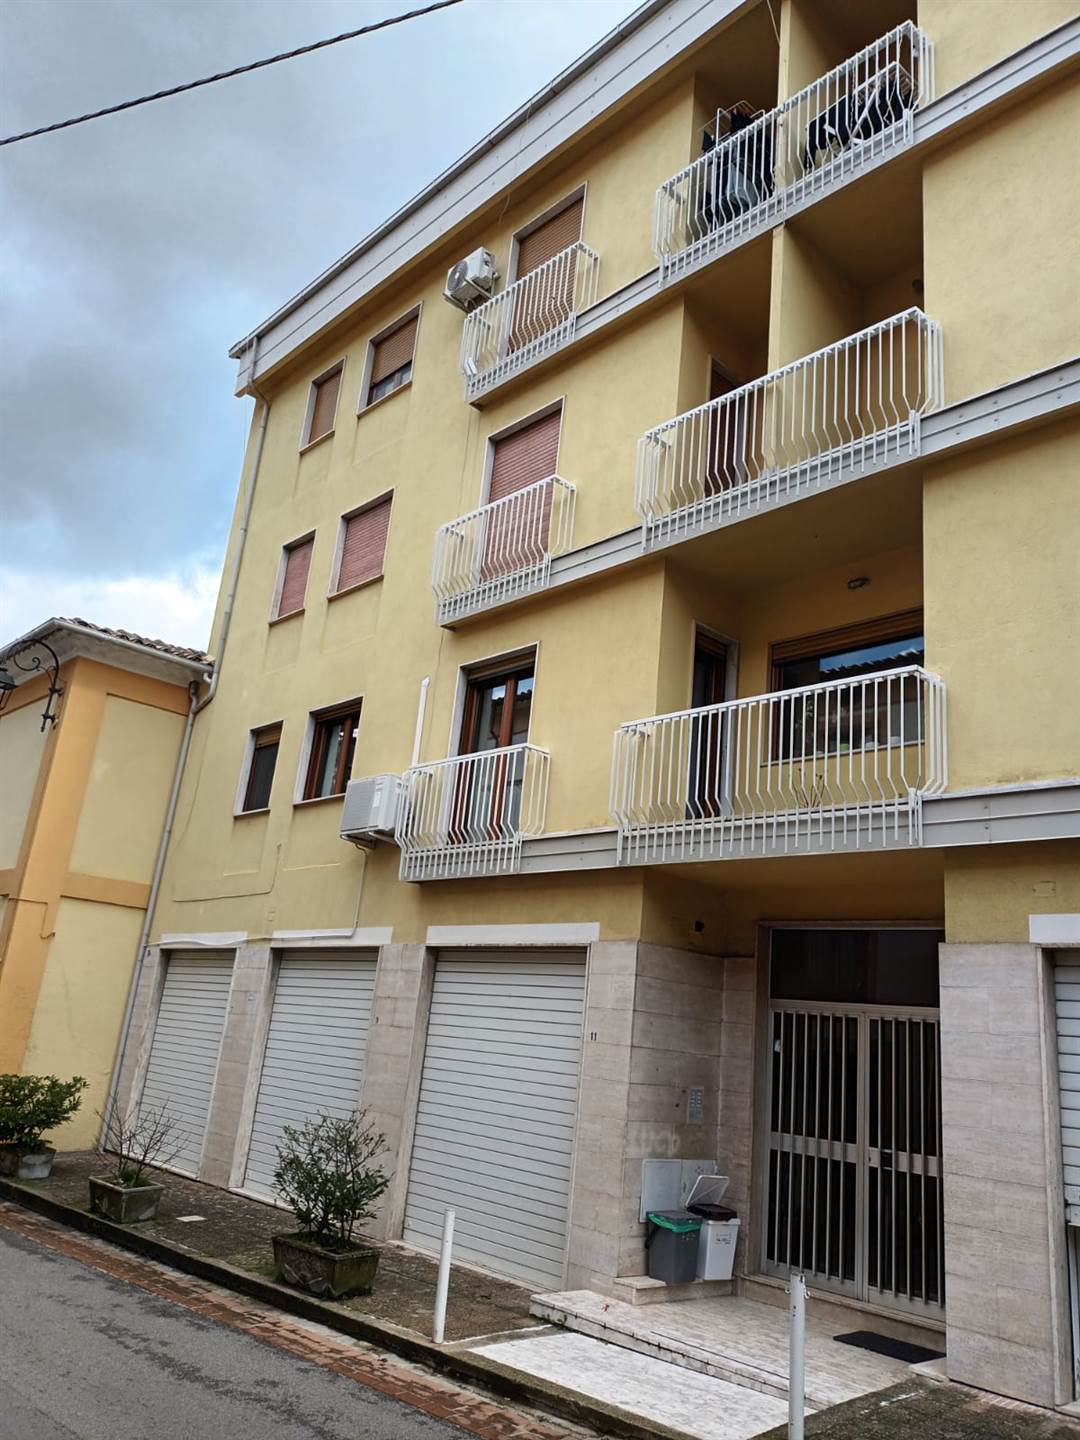 Appartamento in affitto a Mendicino, 3 locali, zona Località: SAN PAOLO, prezzo € 400 | PortaleAgenzieImmobiliari.it